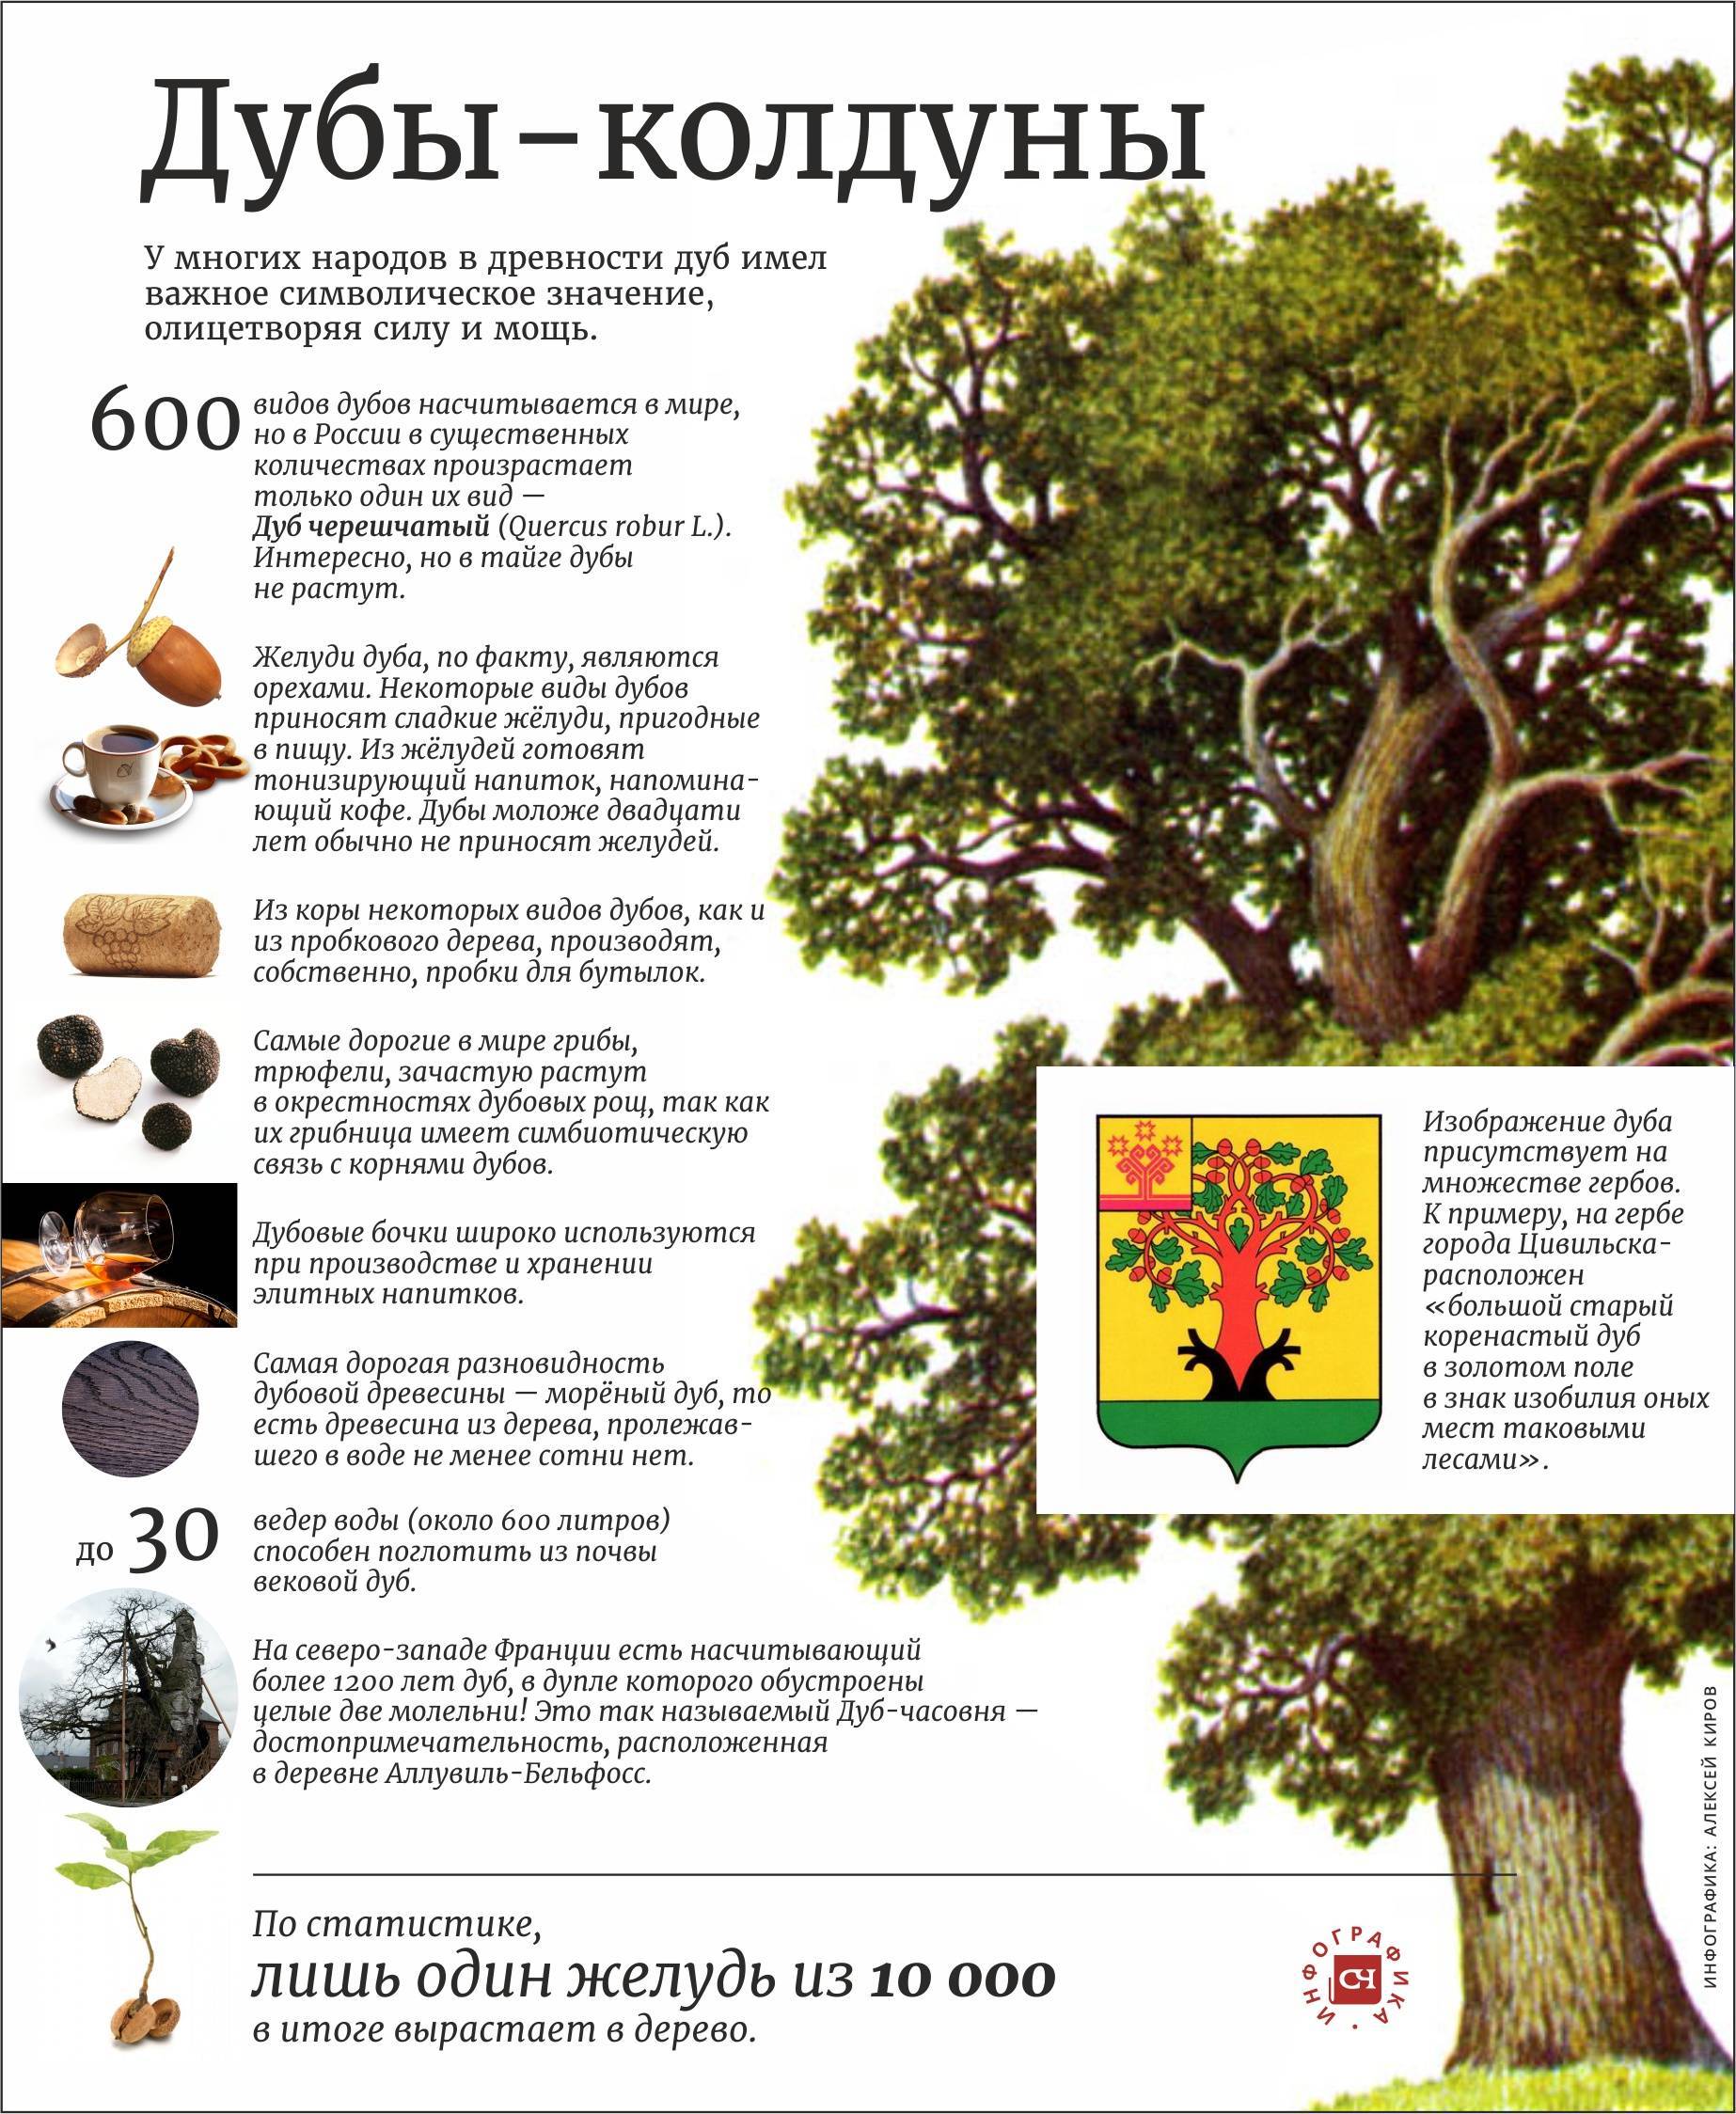 Сколько дубов в мире. Описание дуба. Интересные факты о дубе. Дуб дерево описание. Удивительные факты про дуб.